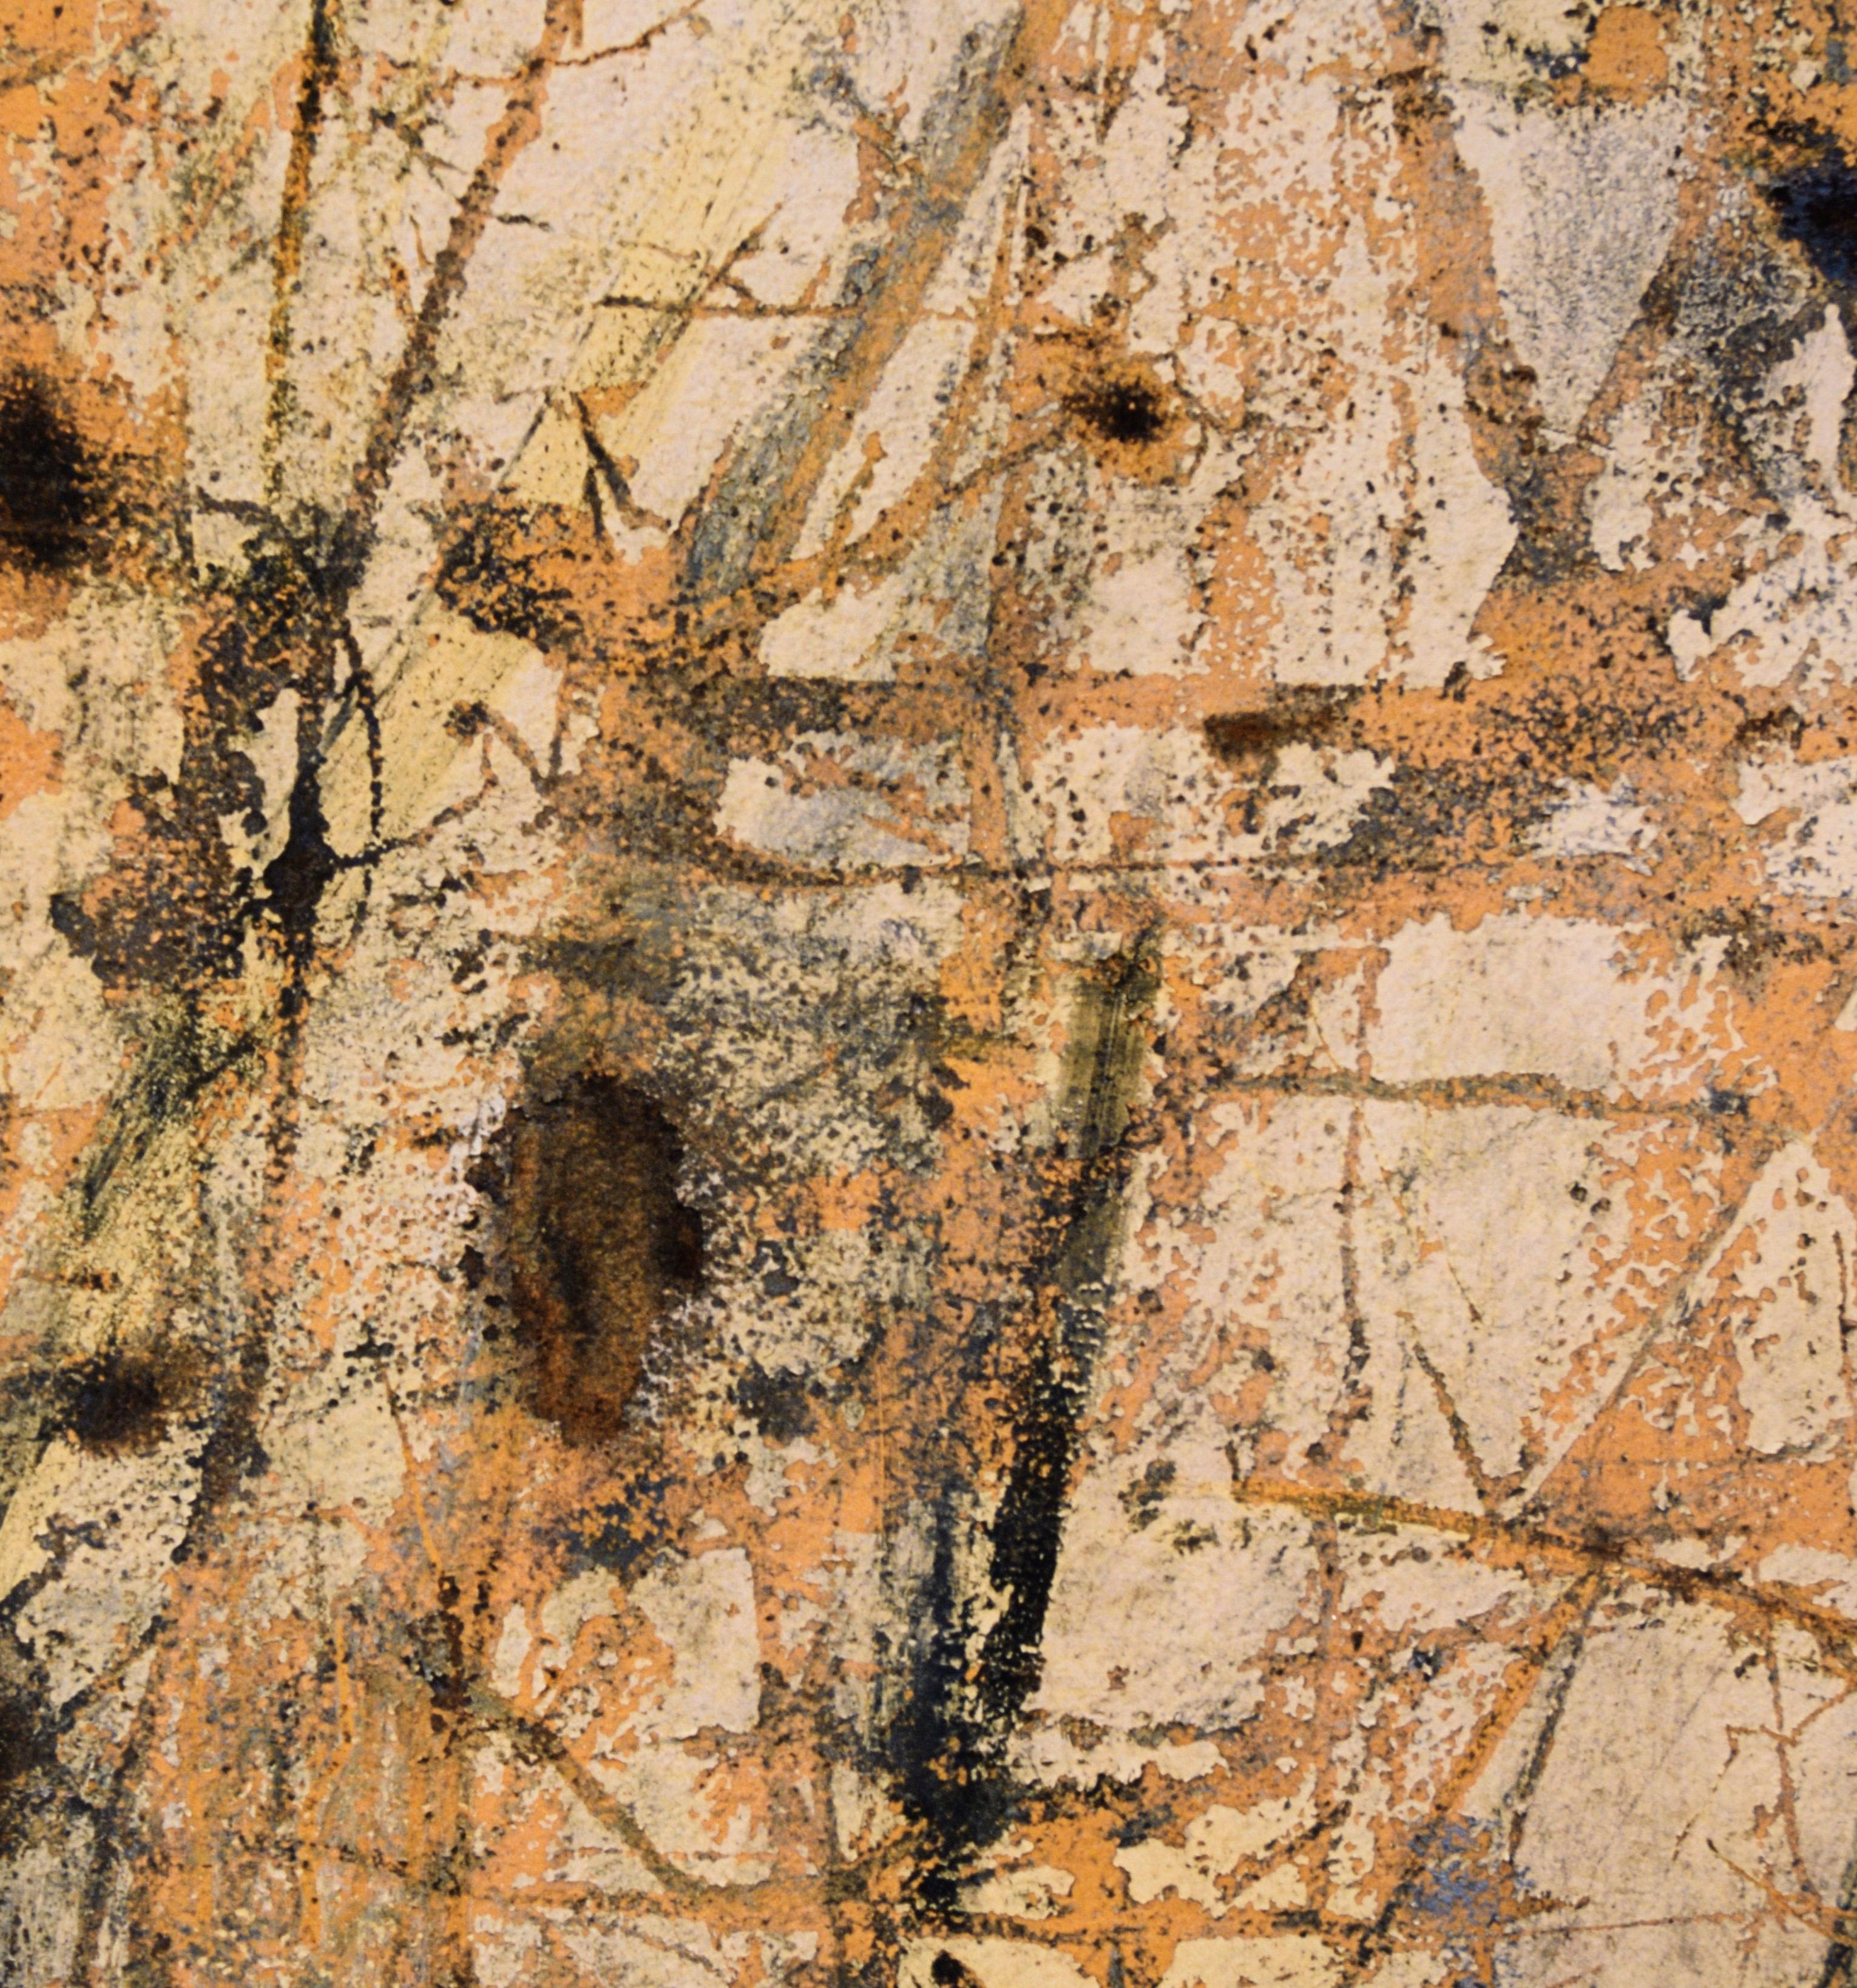 Scratched Paint – großformatige Texturfotografie in Kratzerform – Photograph von Bill Clark